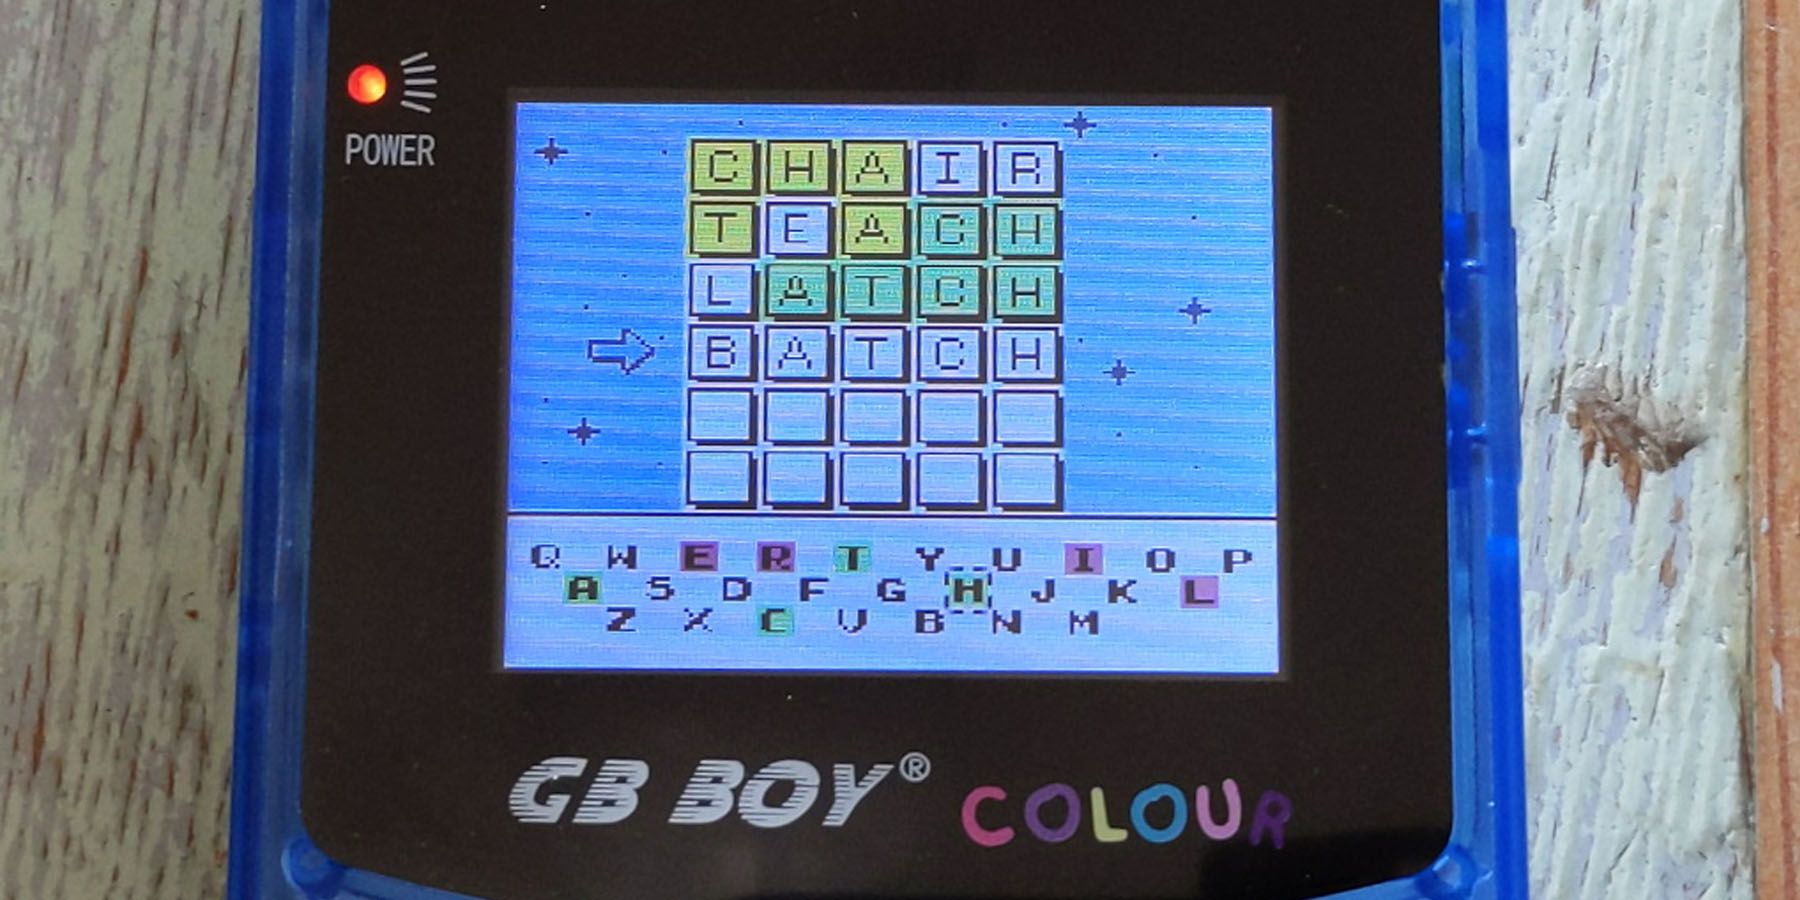 У фаната Wordle есть игра на пользовательском картридже Game Boy